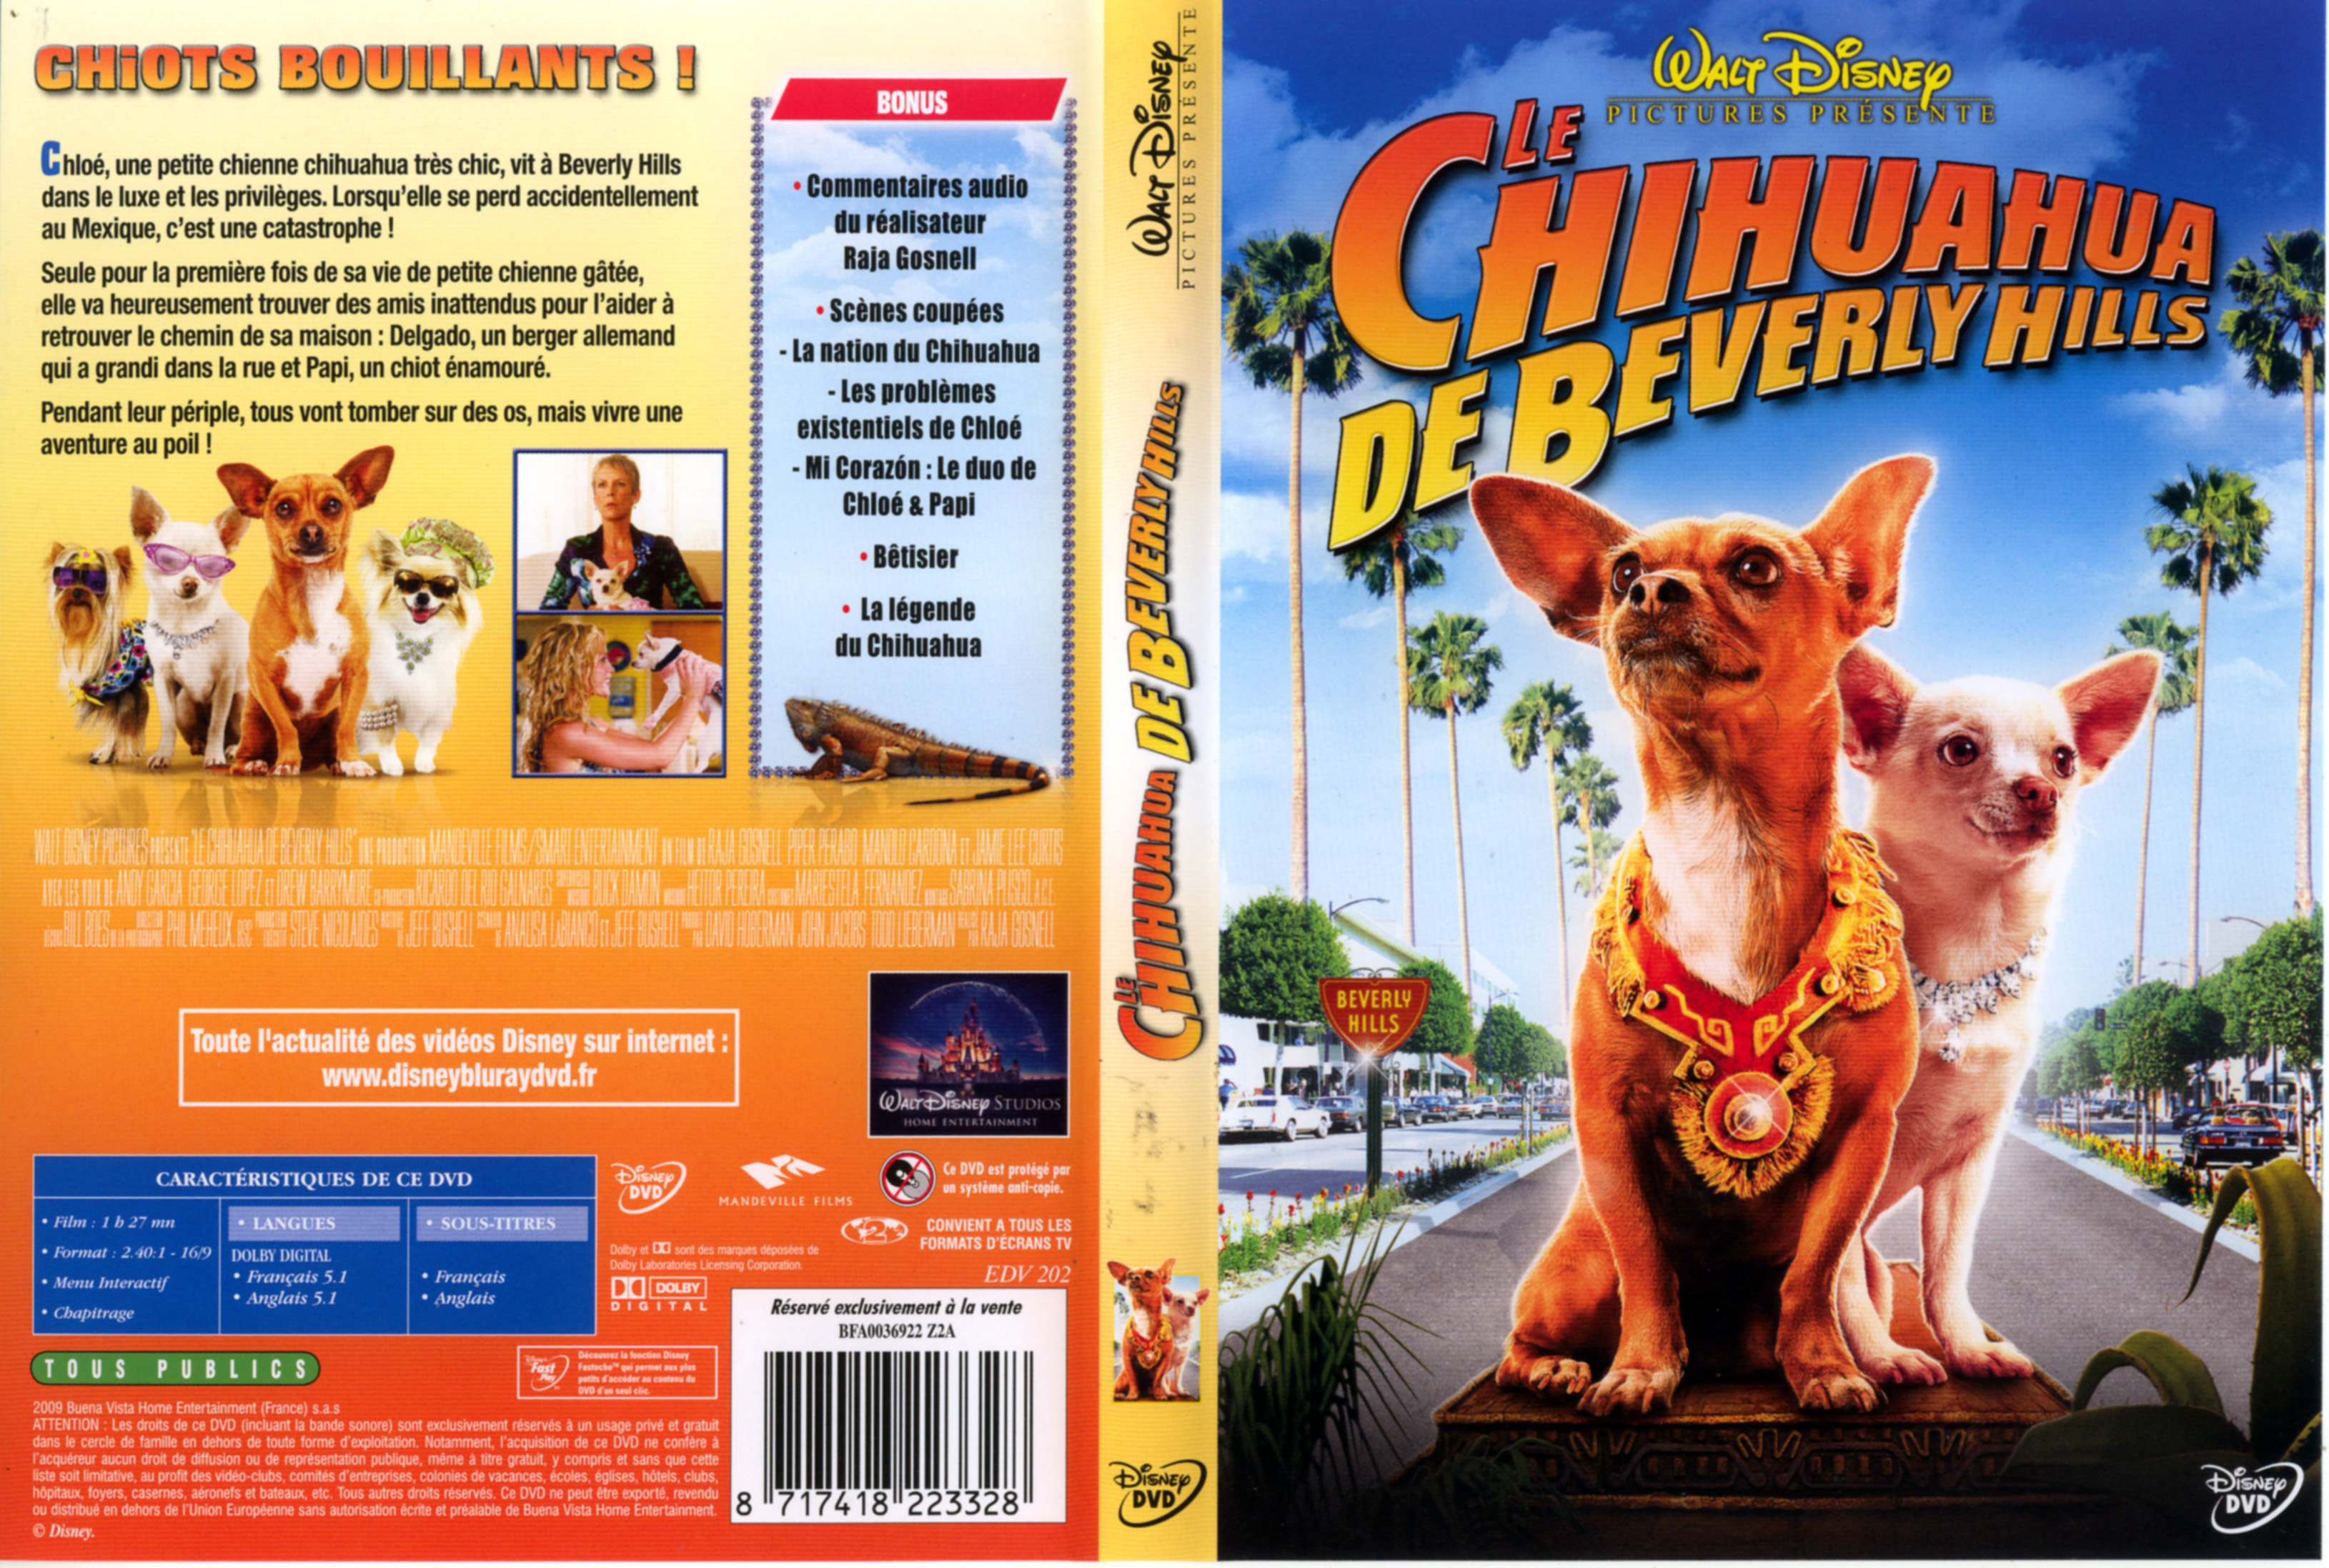 Jaquette Dvd De Le Chihuahua De Beverly Hills Cinéma Passion